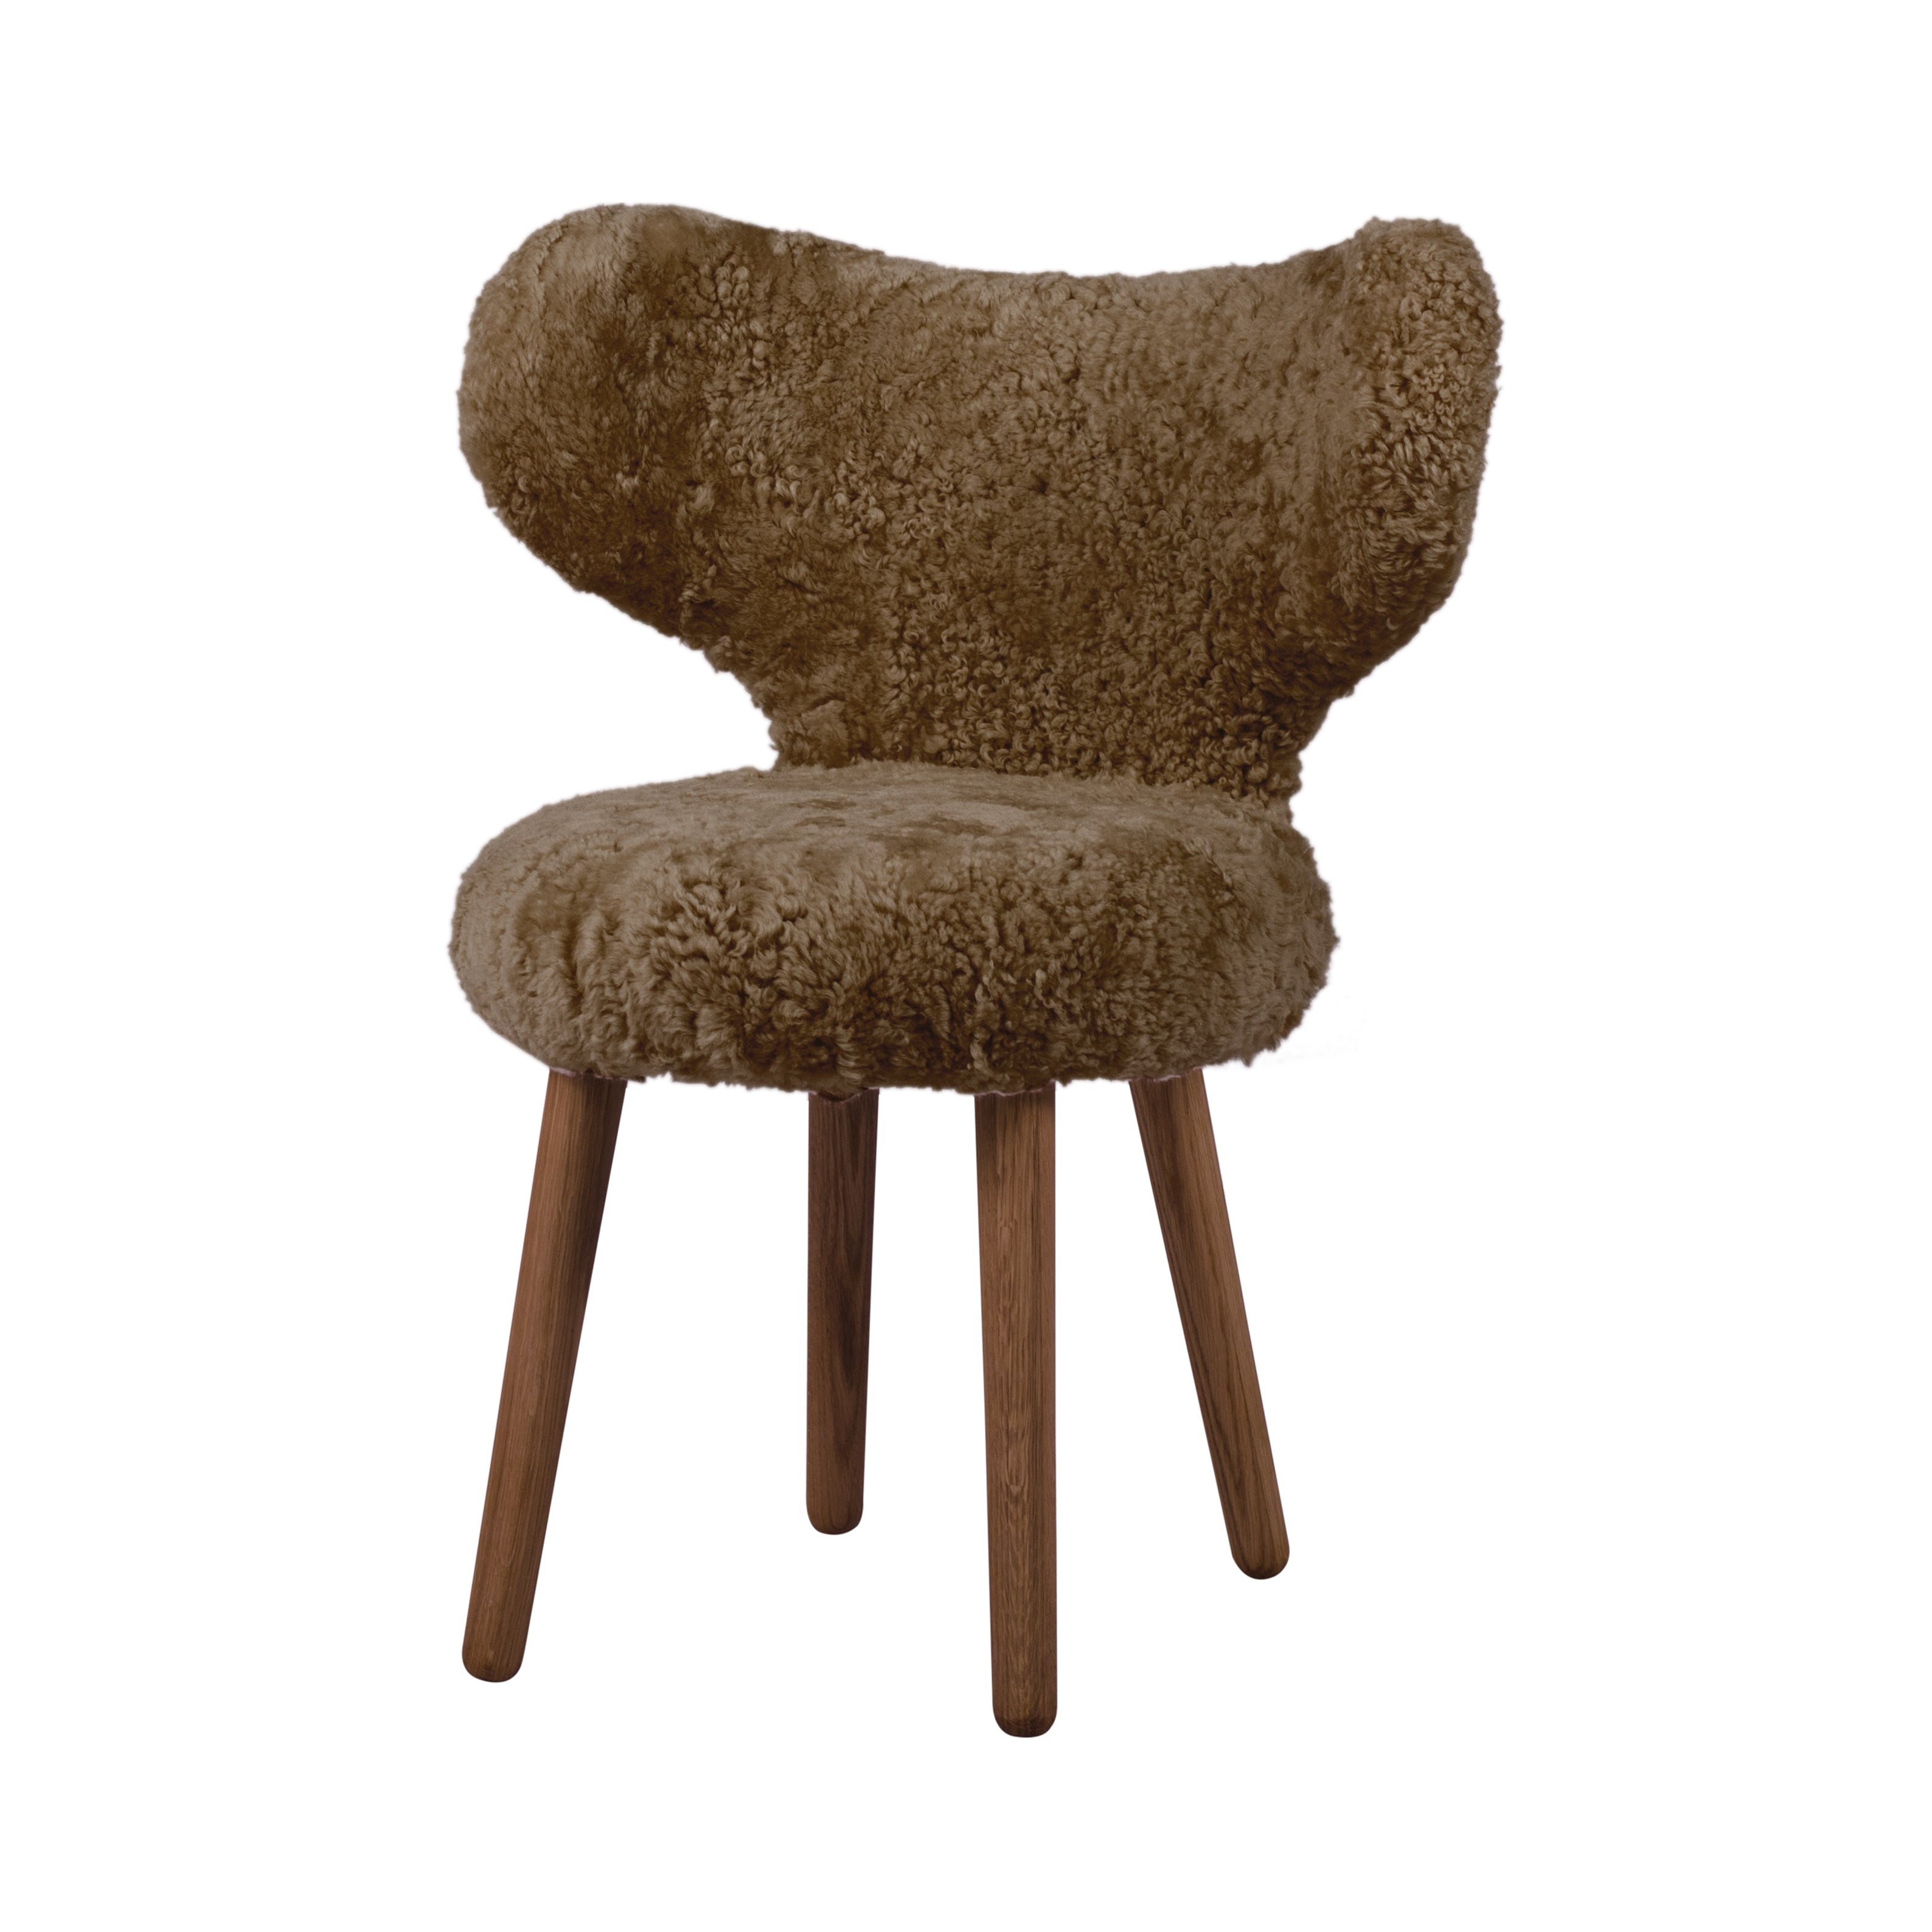 Wng Chair: Walnut